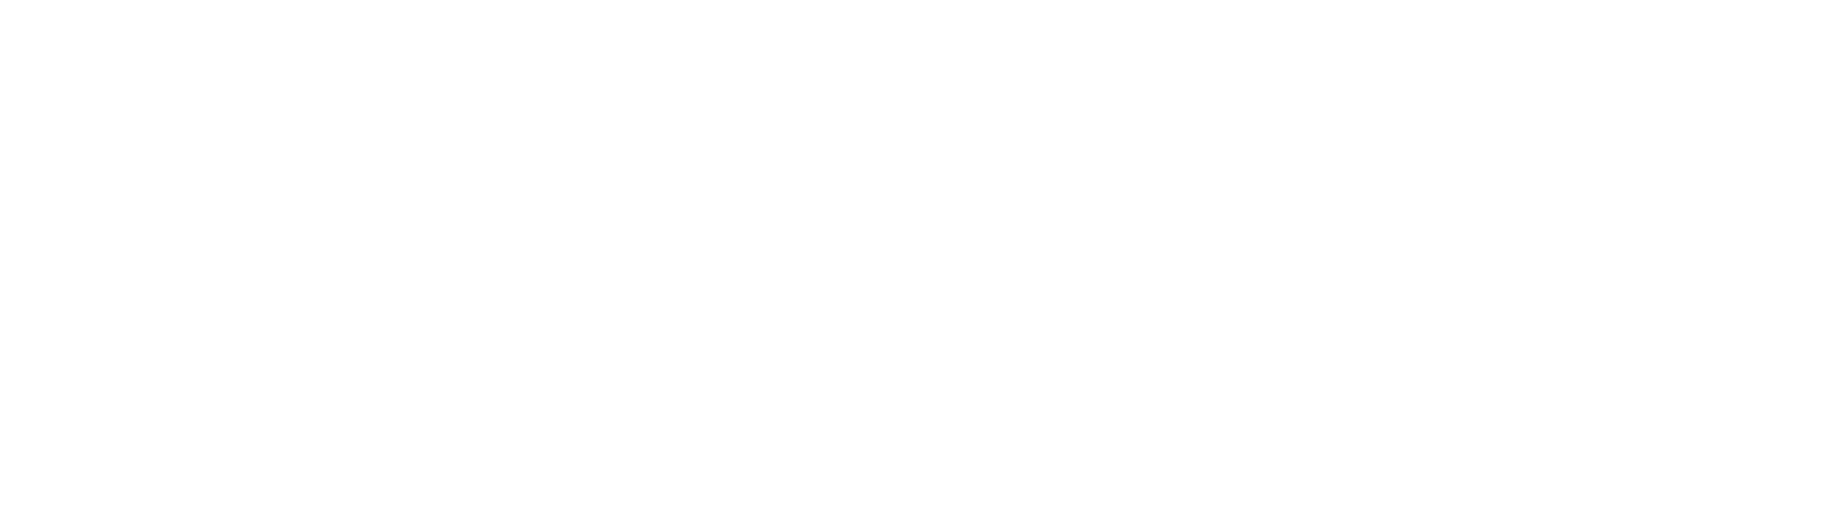 Digital Agentur Heidelberg